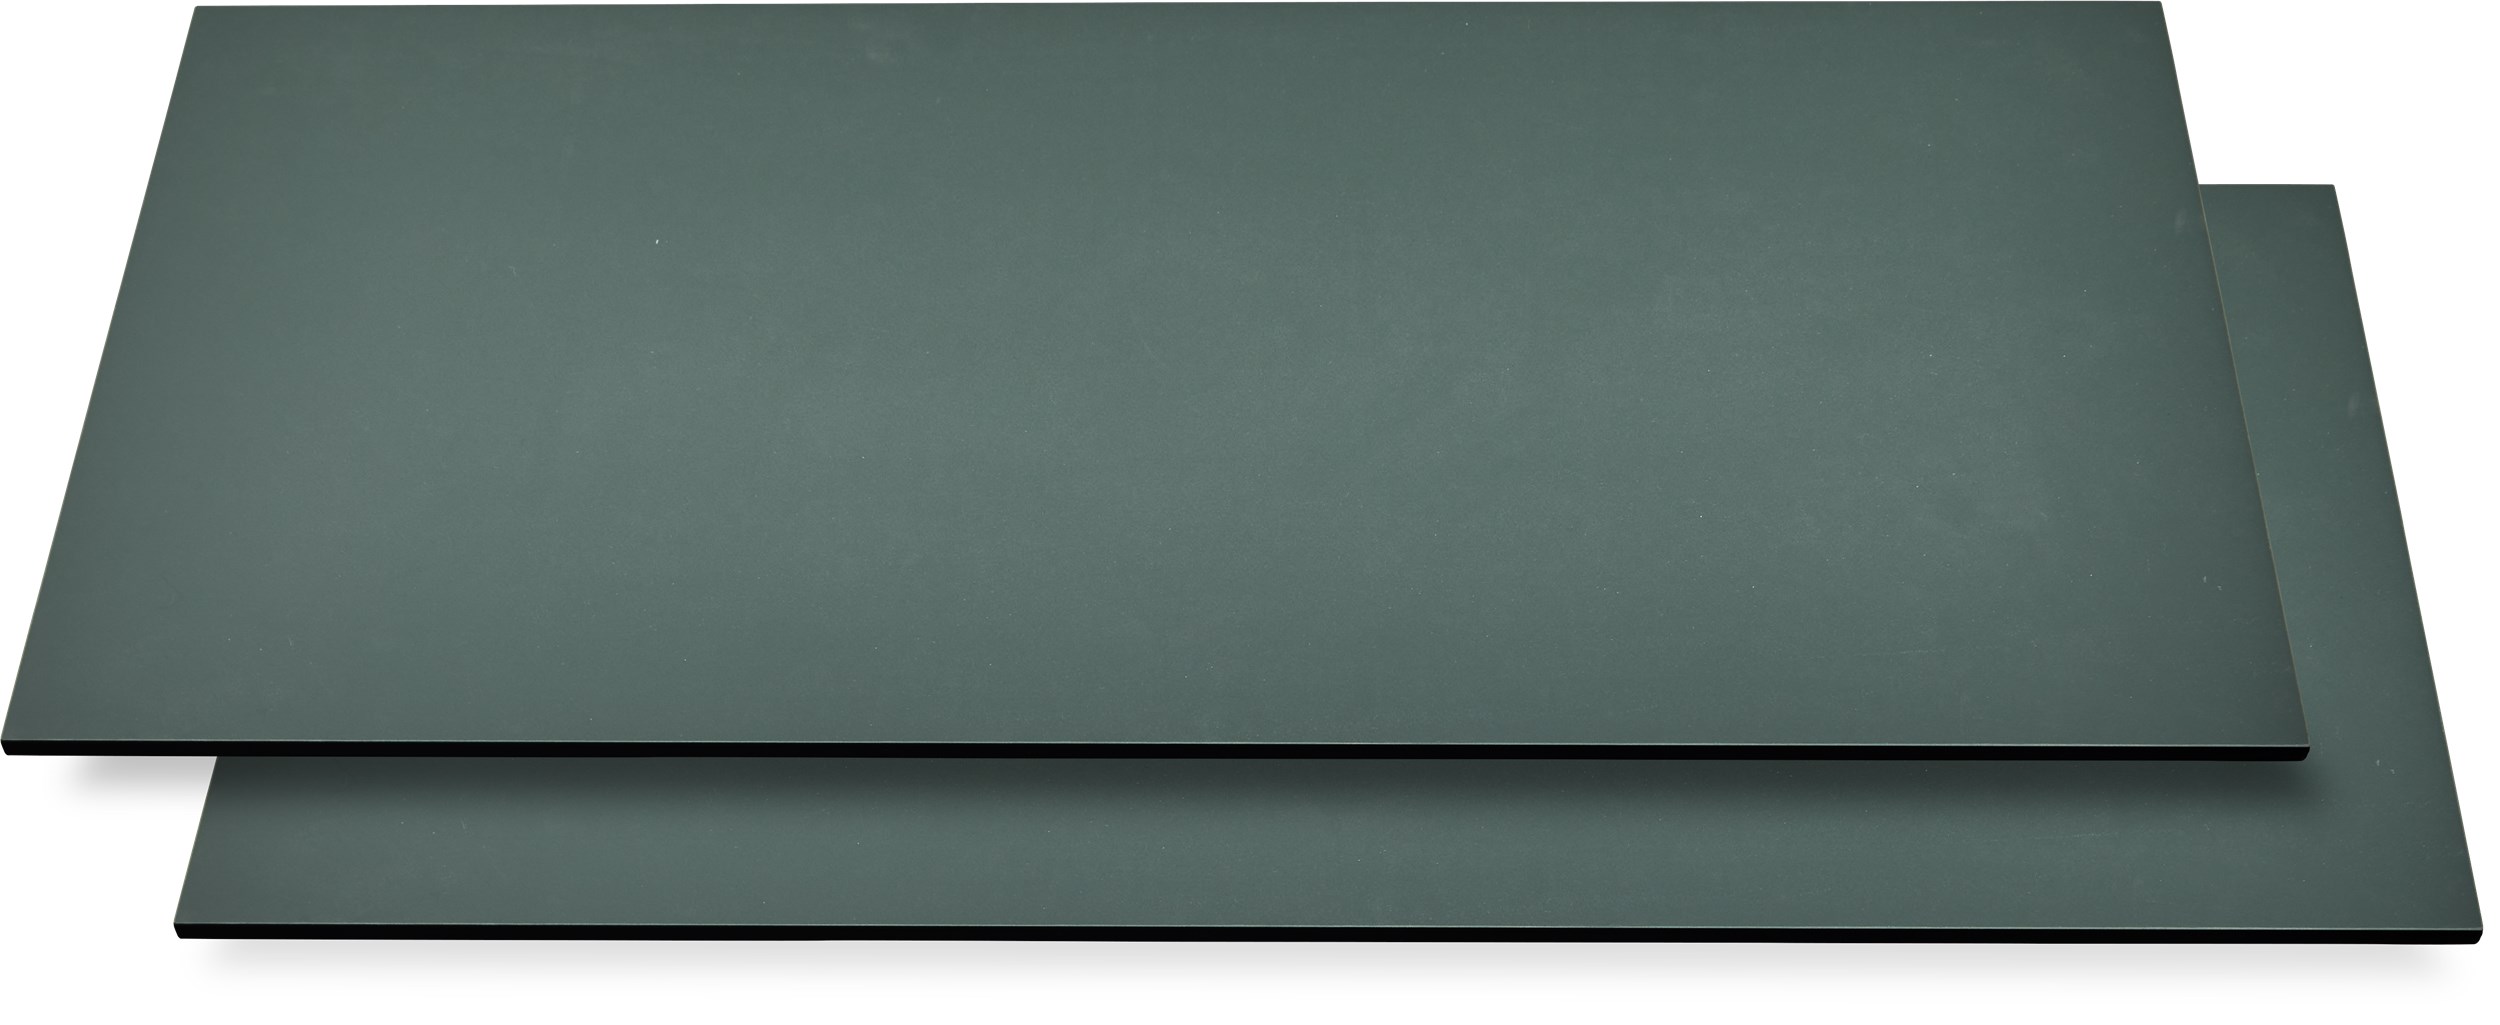 Real Tillægsplade 47 x 95 cm - Top i grøn linoleum, kant i sortmalet MDF og 2 stk.